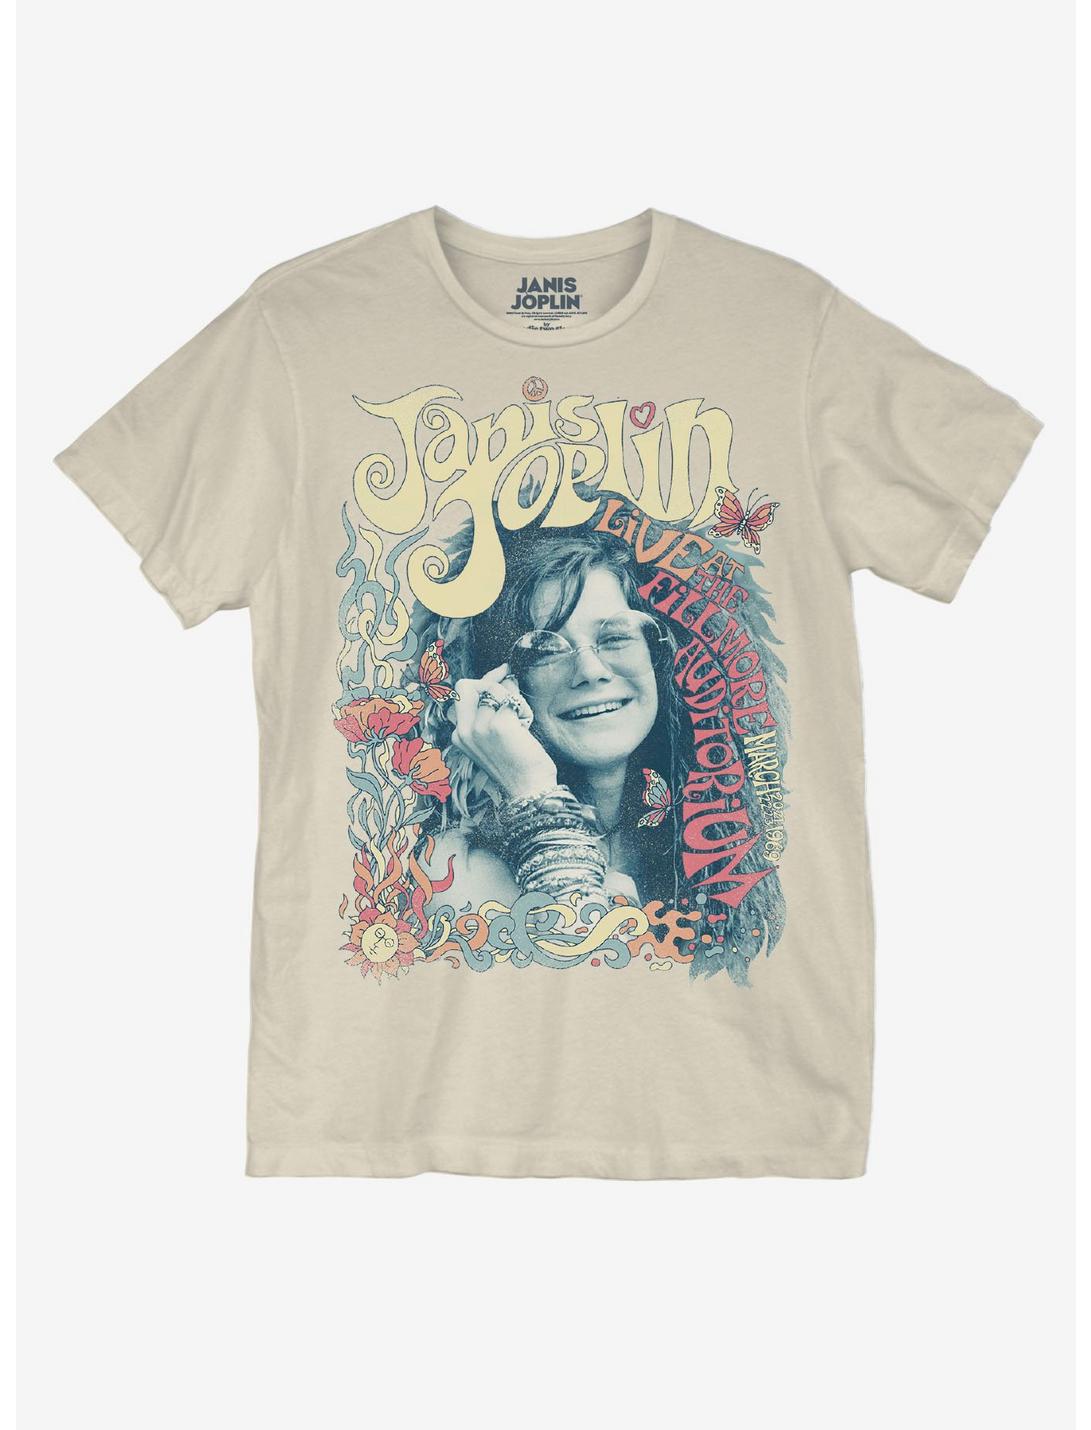 Janis Joplin Live at The Fillmore T-Shirt – Vinyl Revival Records